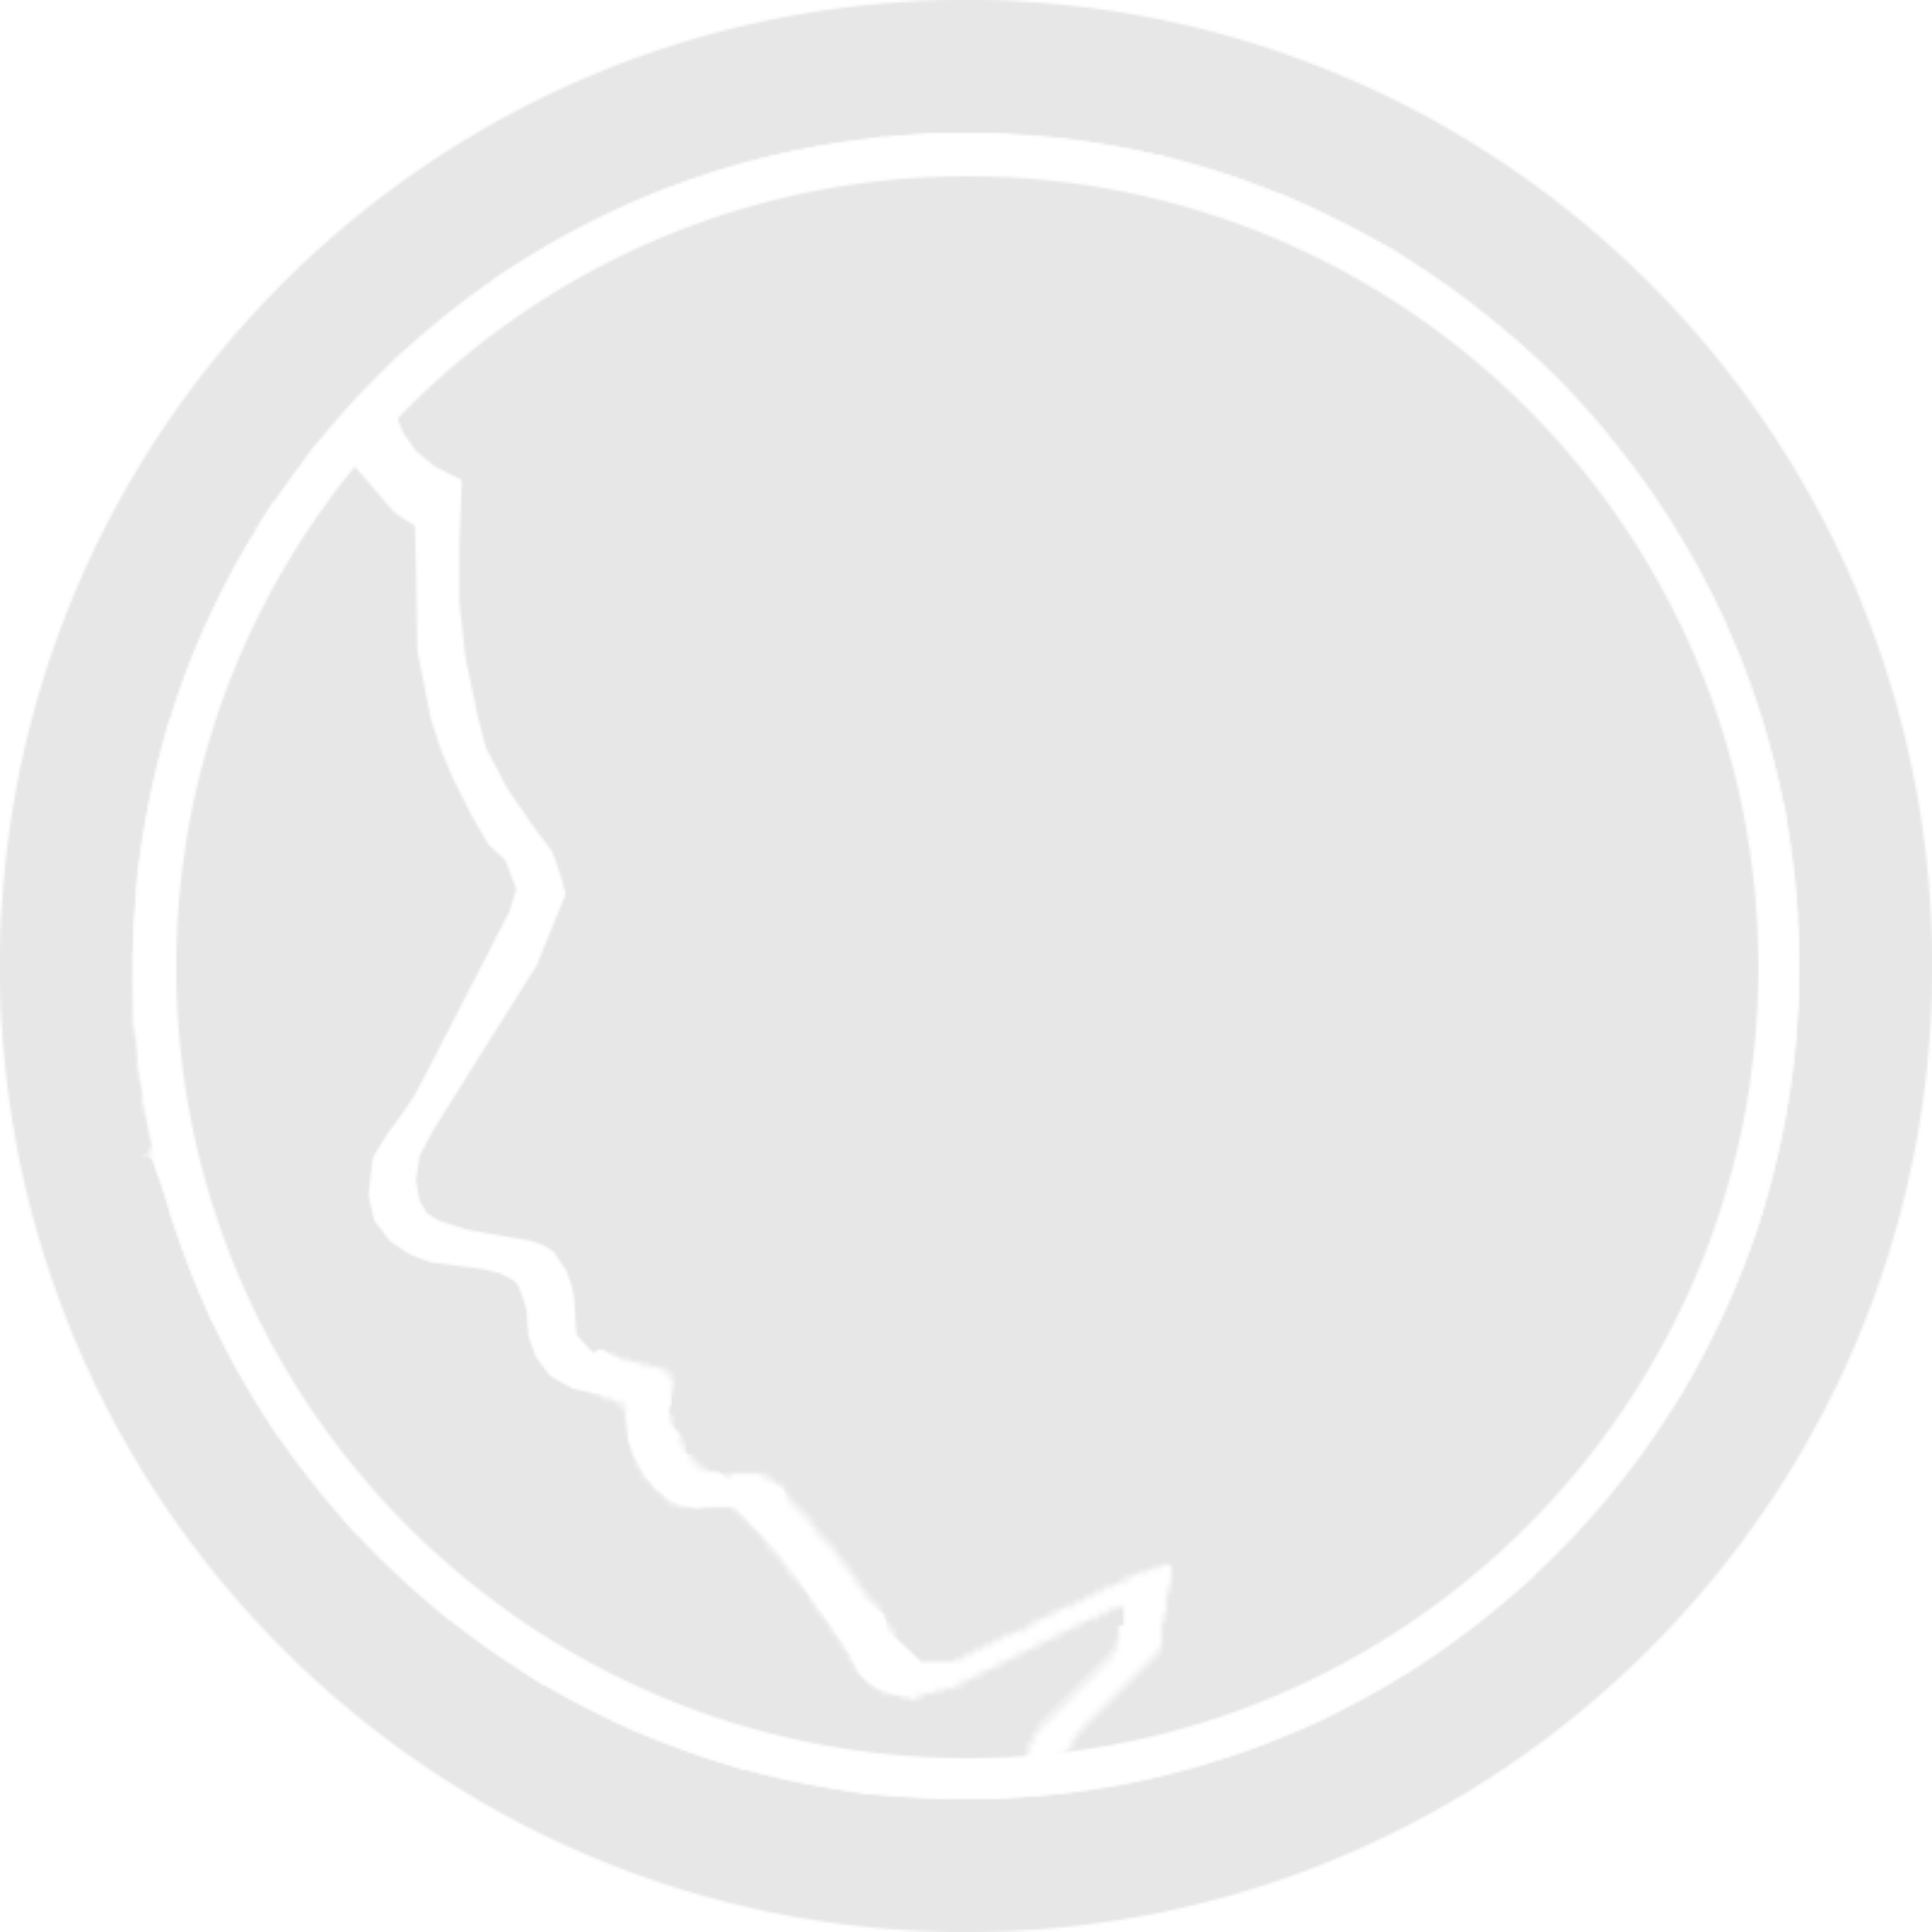 Marca de Felipe Gonçalves, consiste em um esboço de um rosto de perfil, com um contorno de um circulo.